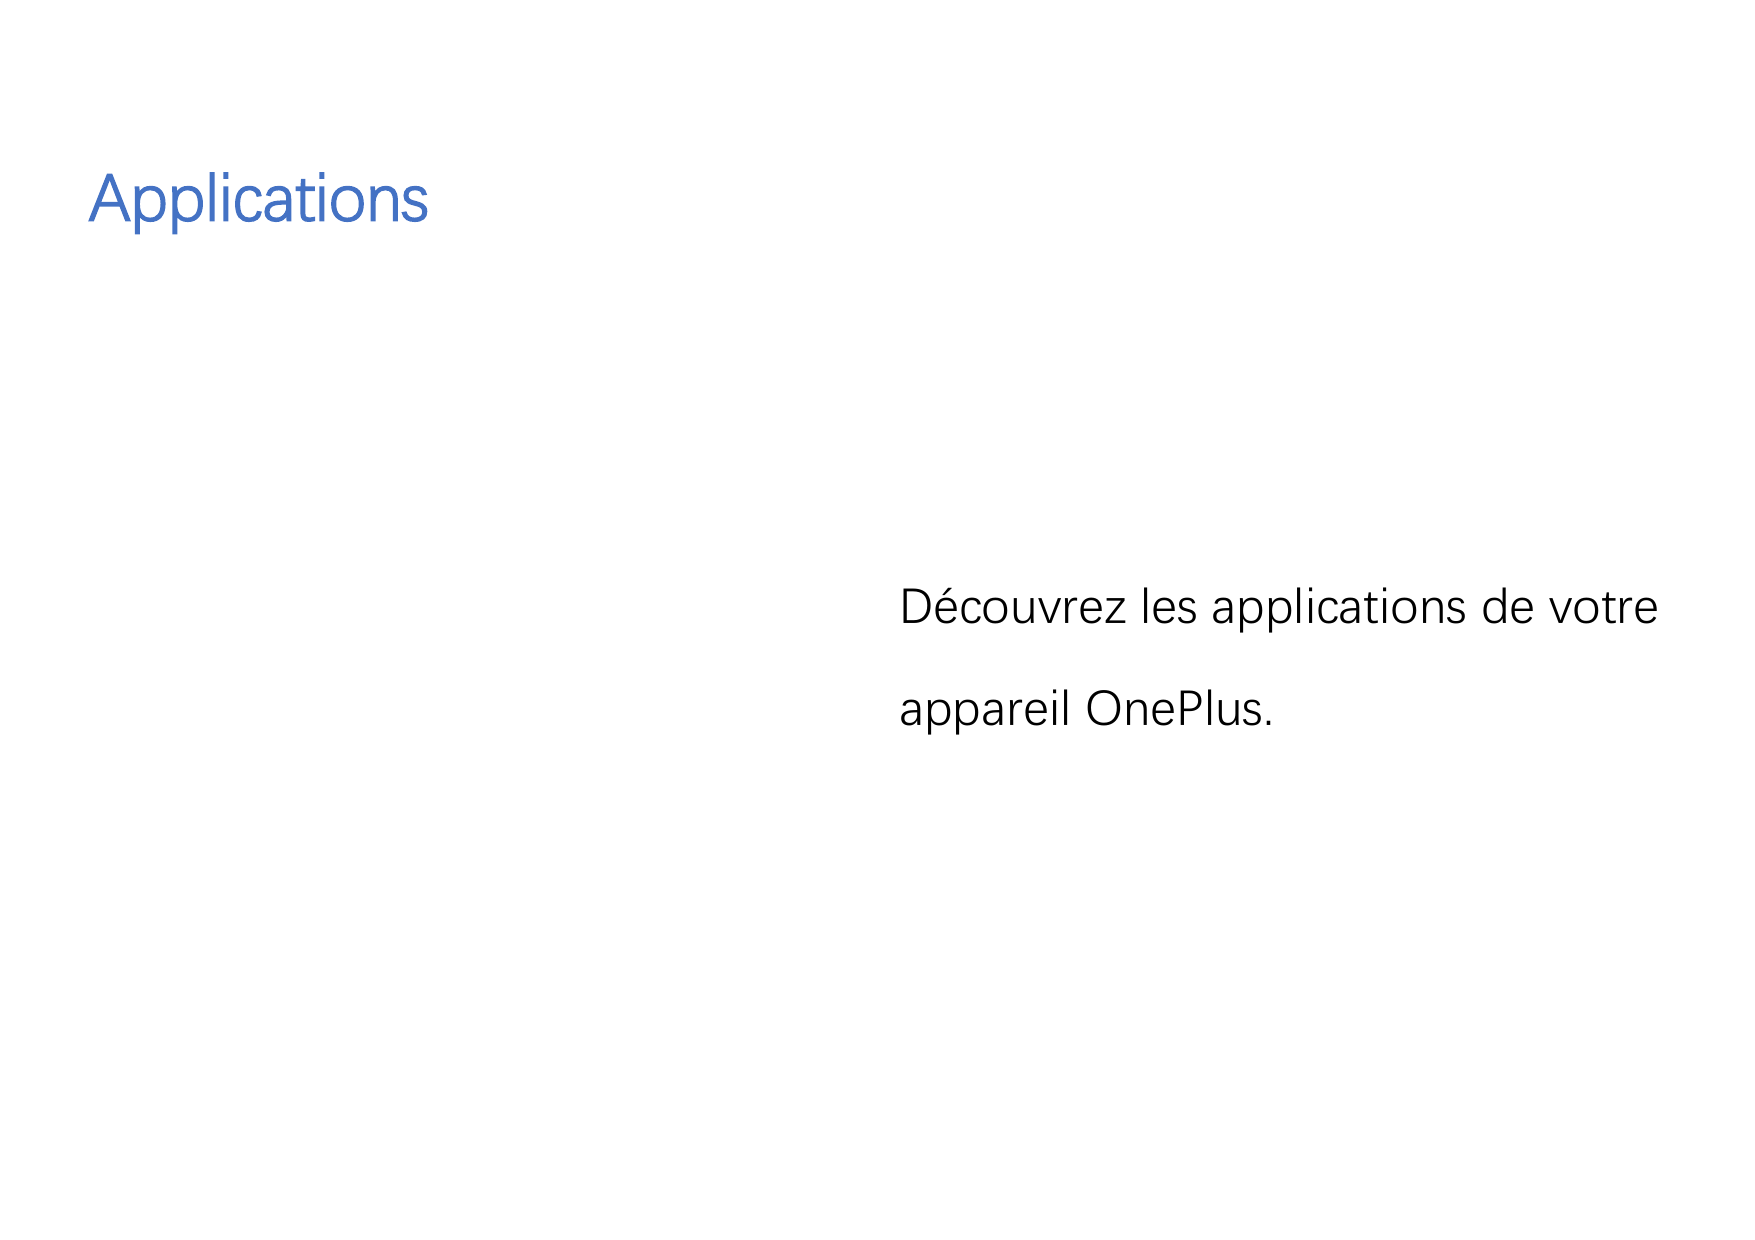 ApplicationsDécouvrez les applications de votreappareil OnePlus.